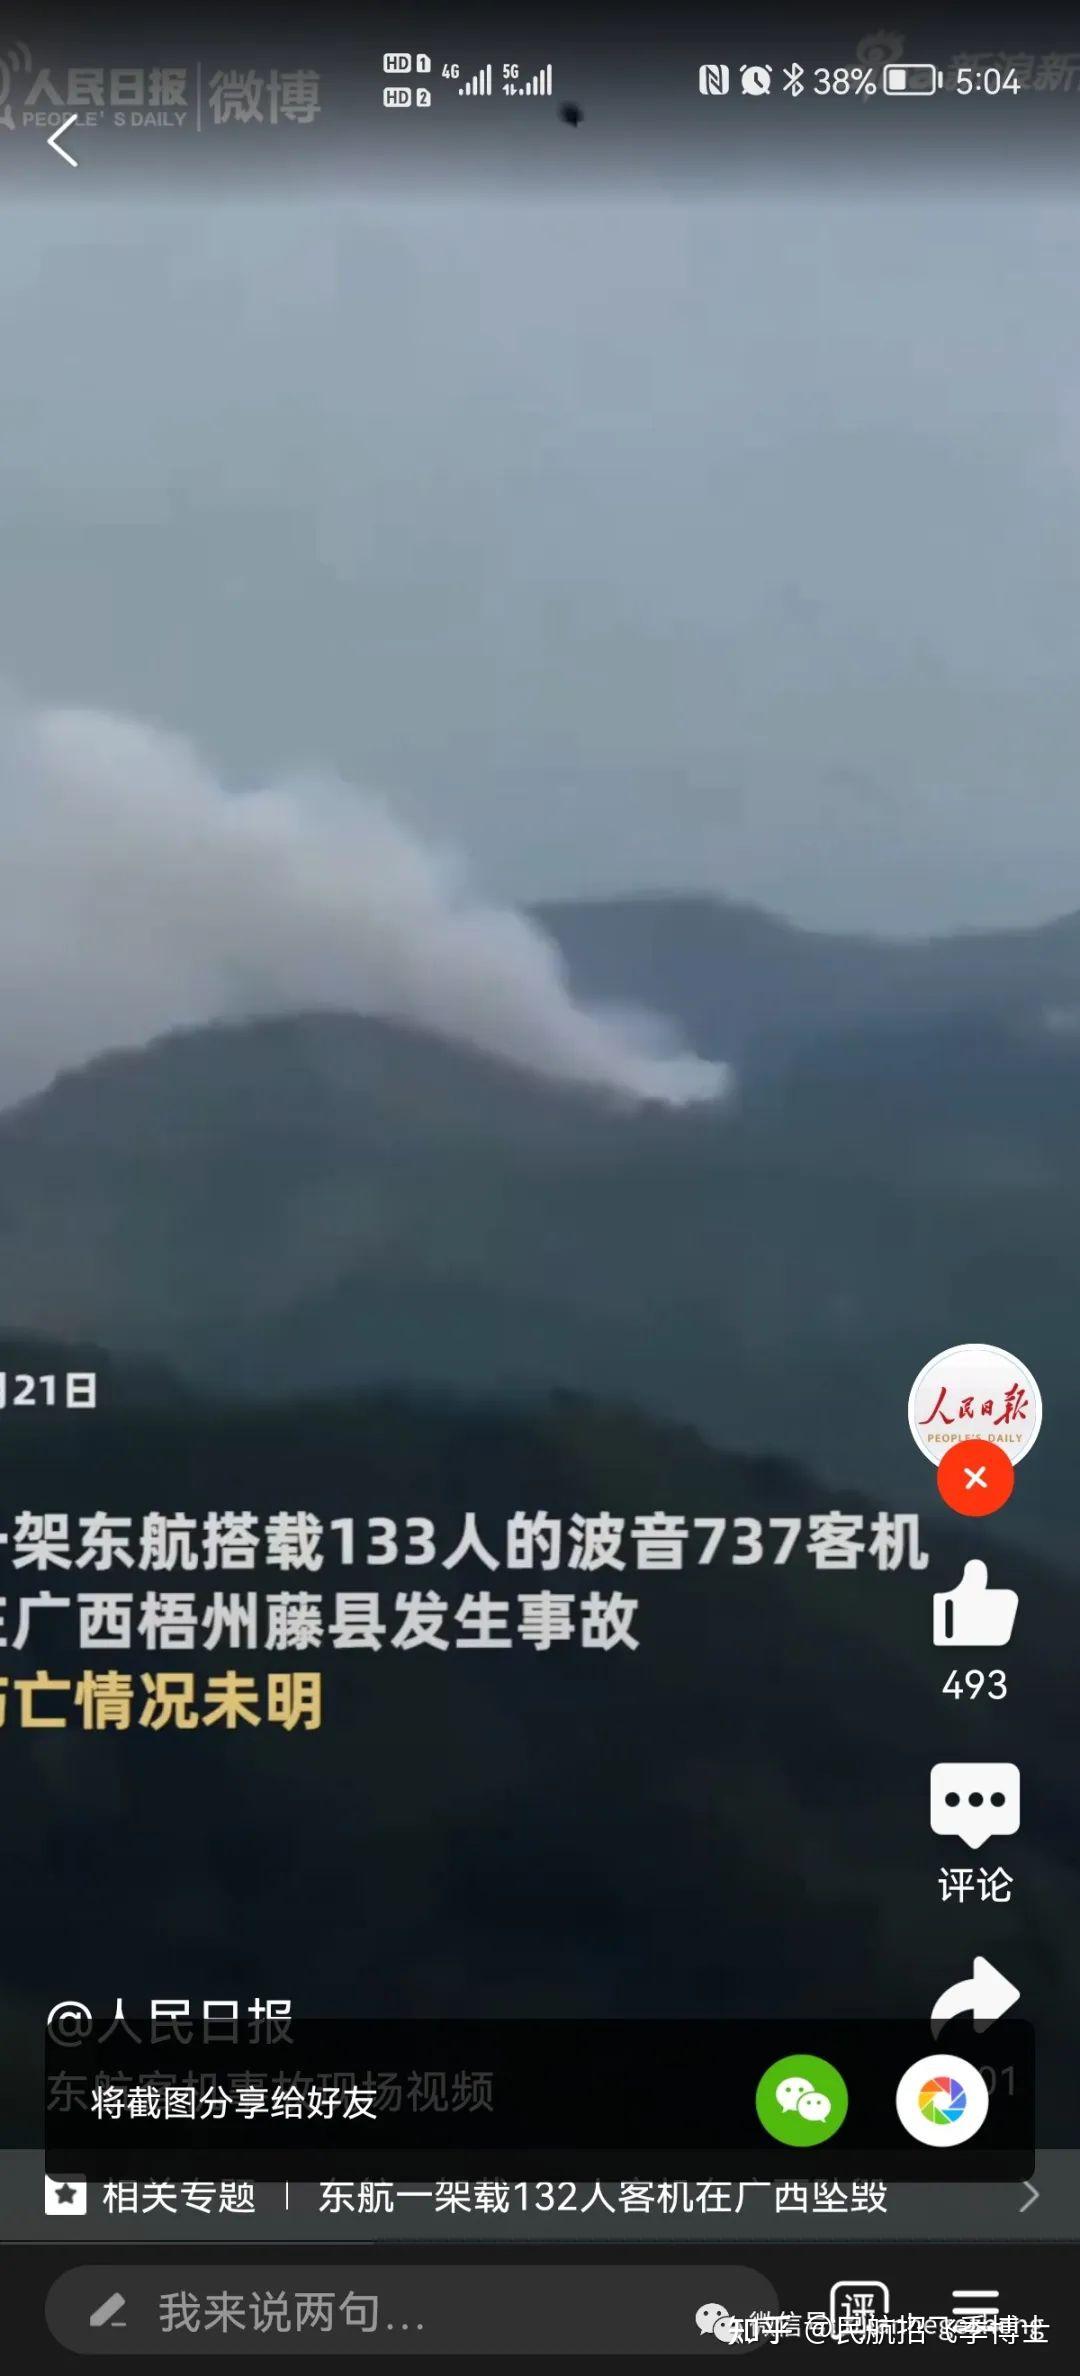 ip 东航mu5735波音737昆明至广州航班在梧州坠毁,乘客123人,机组9人